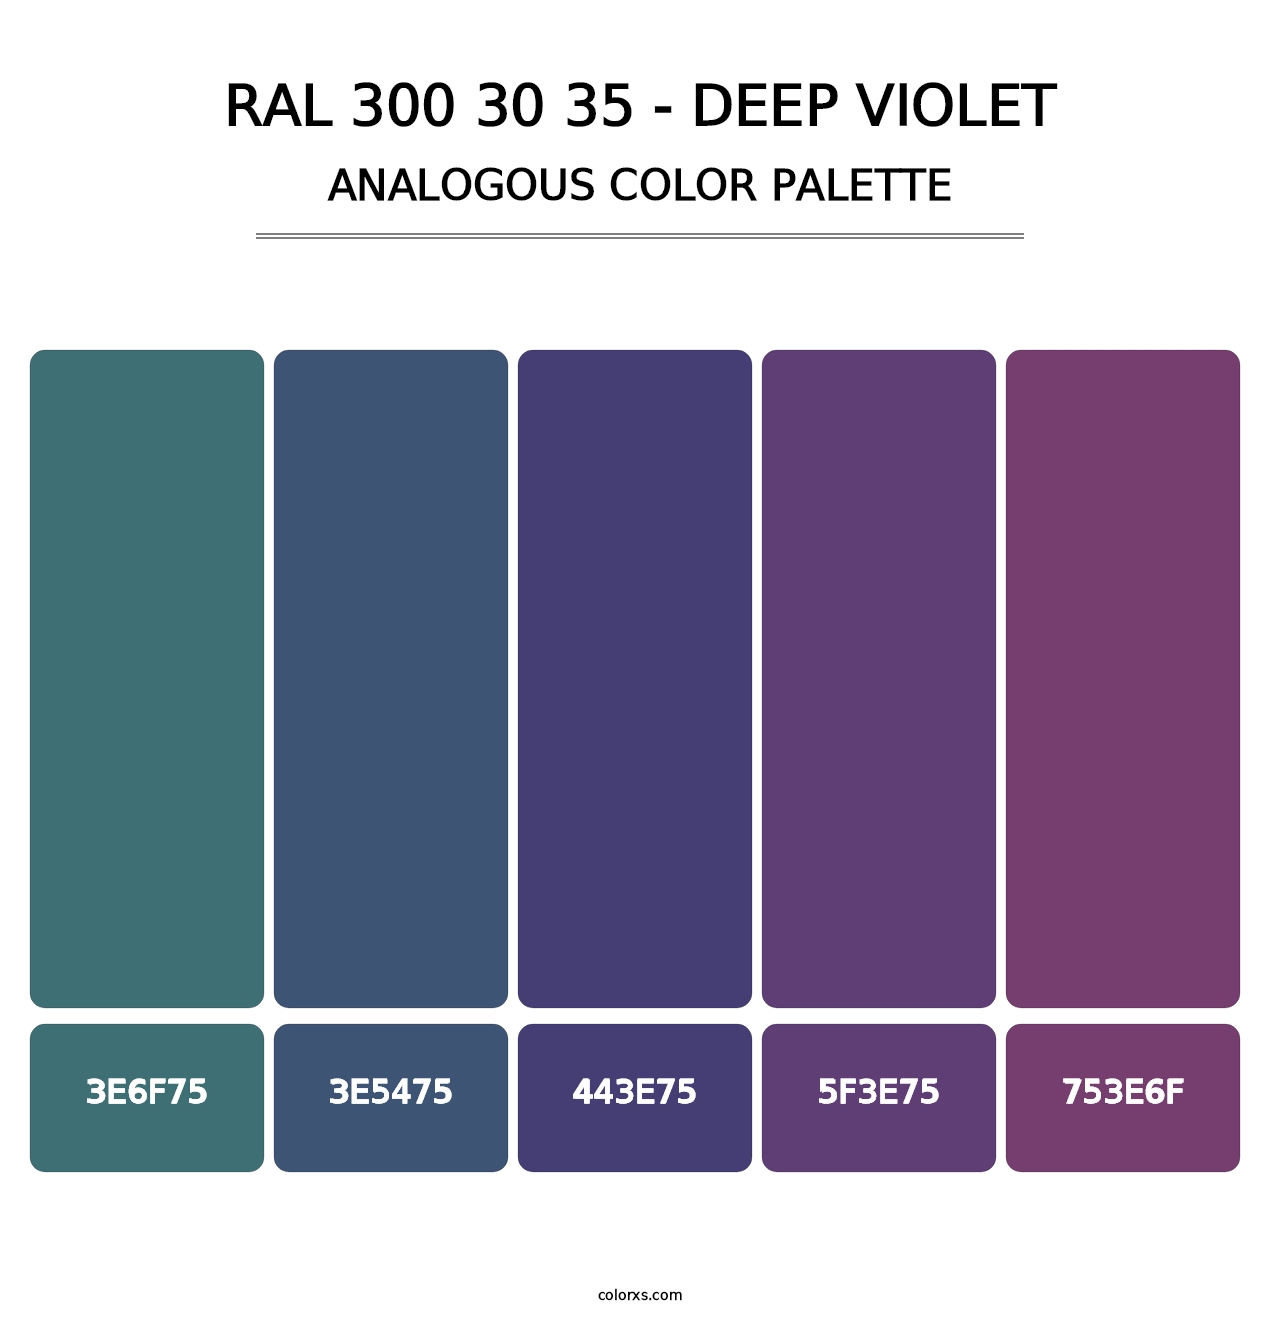 RAL 300 30 35 - Deep Violet - Analogous Color Palette